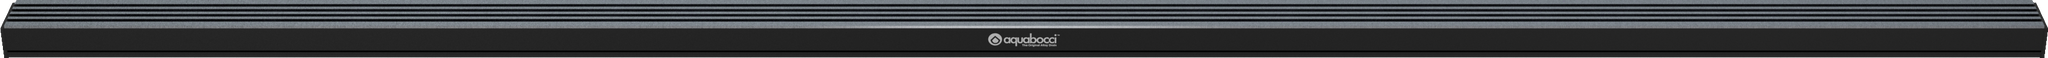 S66 | 2400mm / 94 Inch Length - Aquabocci Ltd